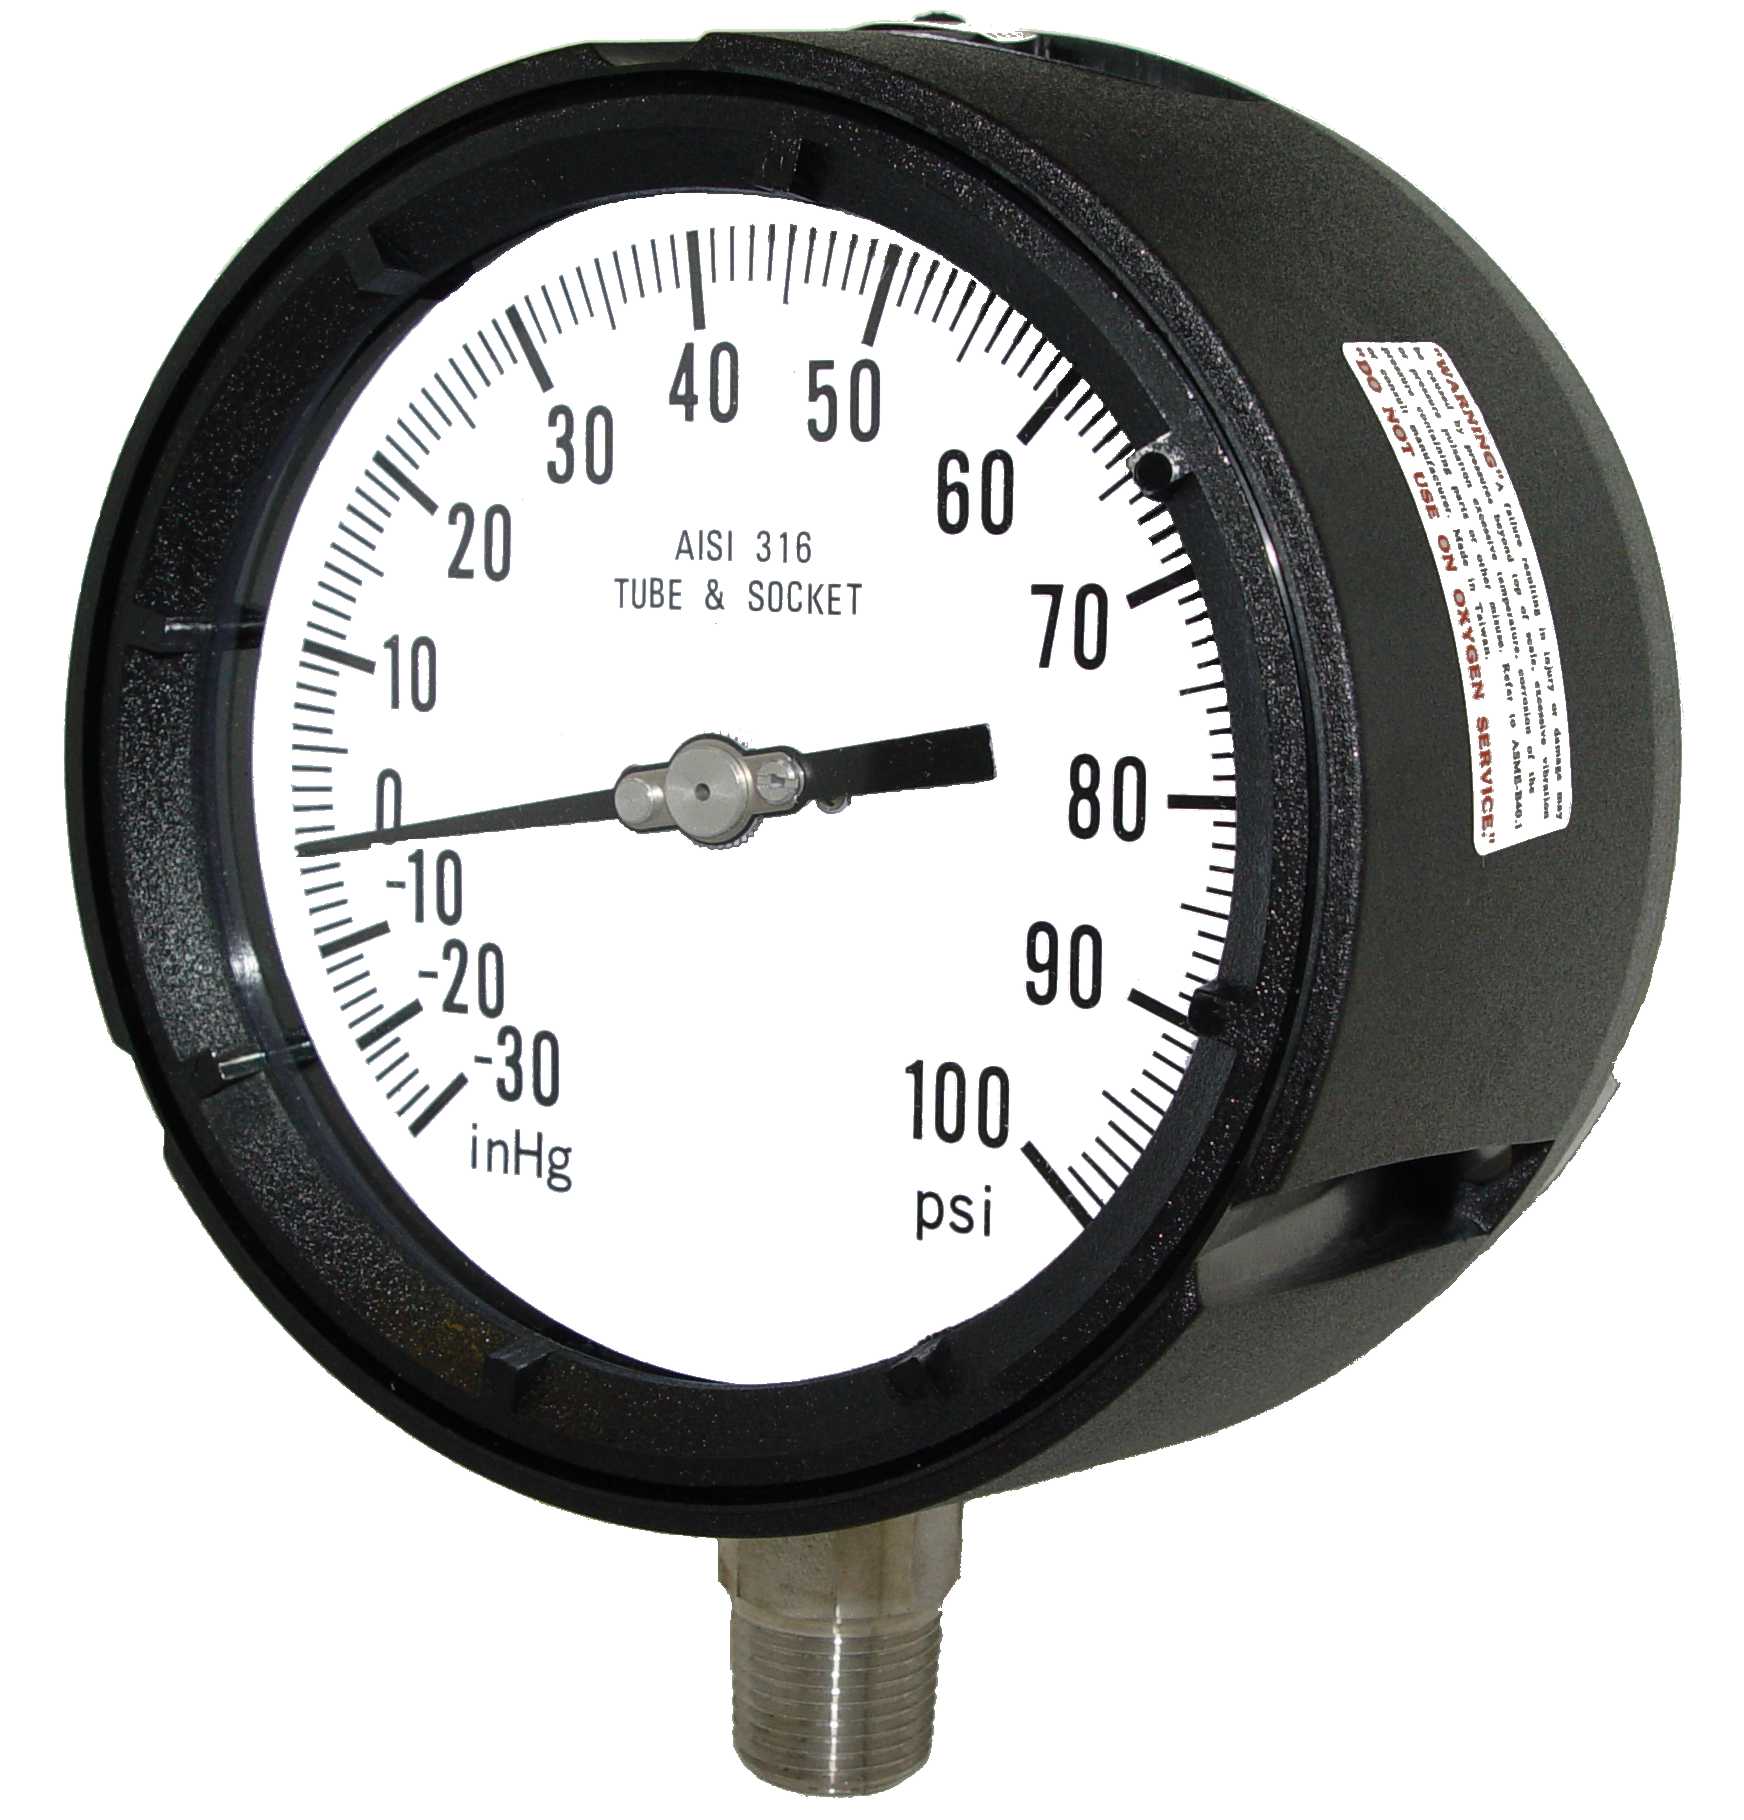 Model 4501-452N gauge, 4.5 dial, 1/2 mount, 0-1500 PSI